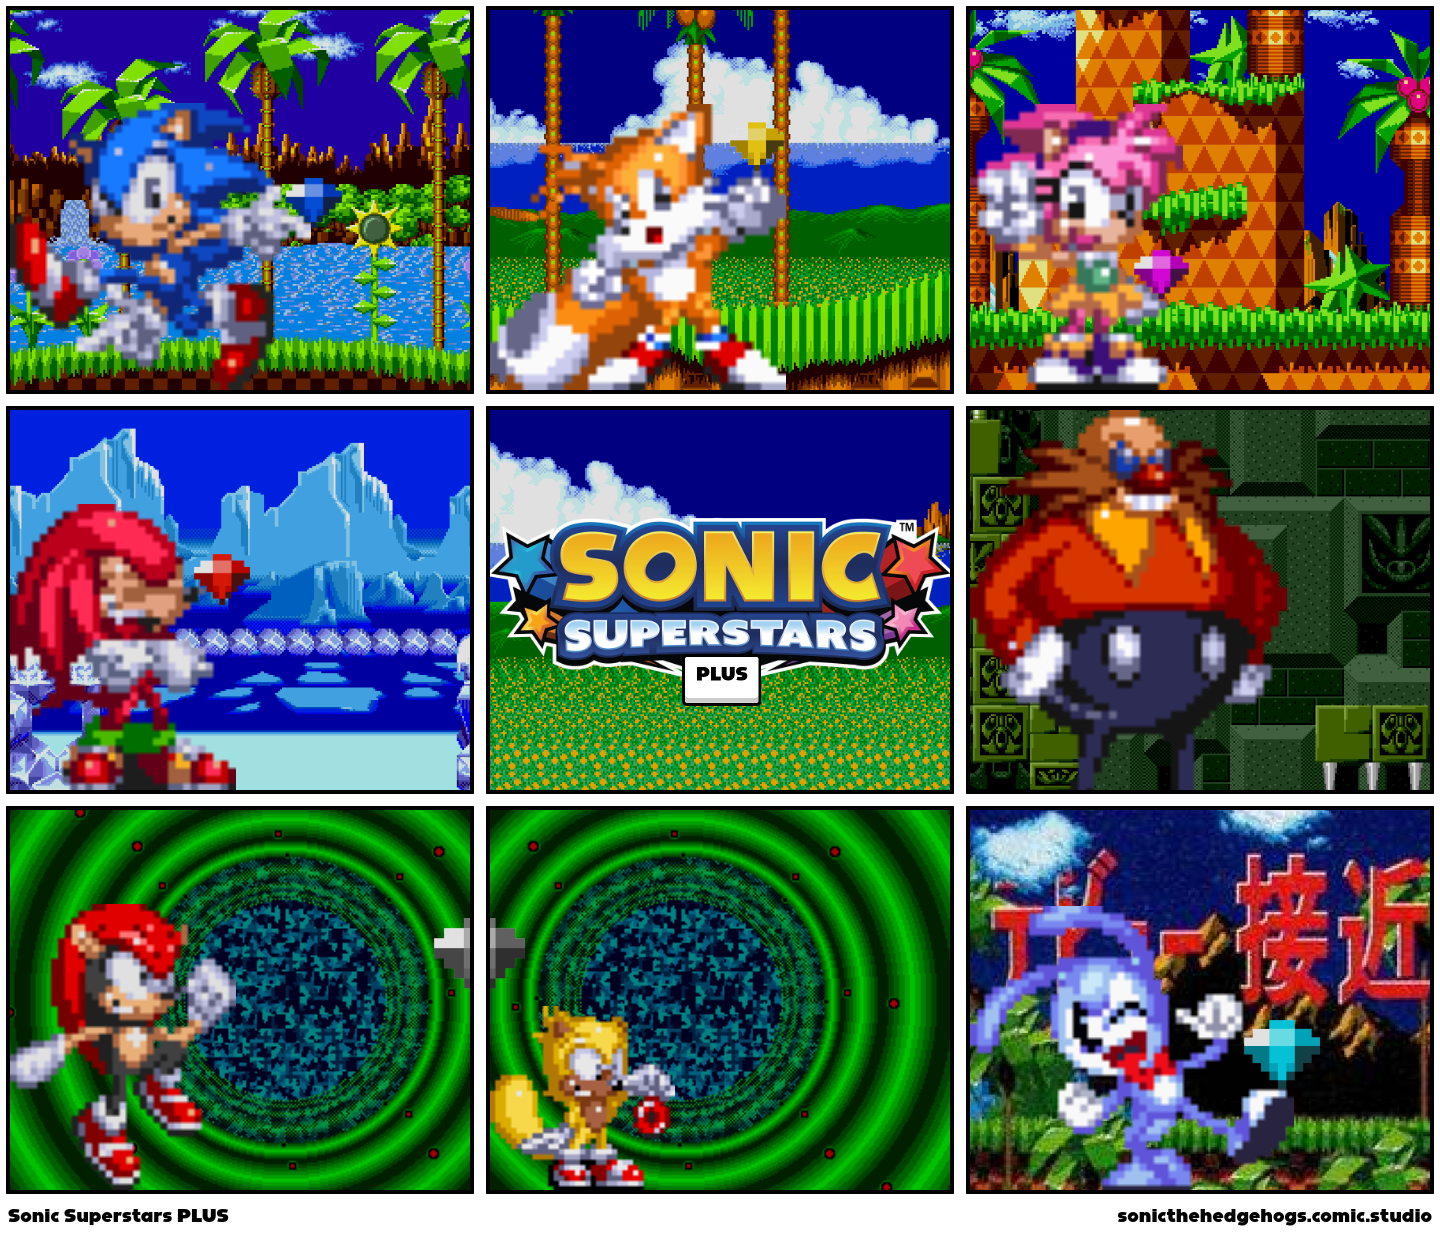 Sonic Superstars PLUS